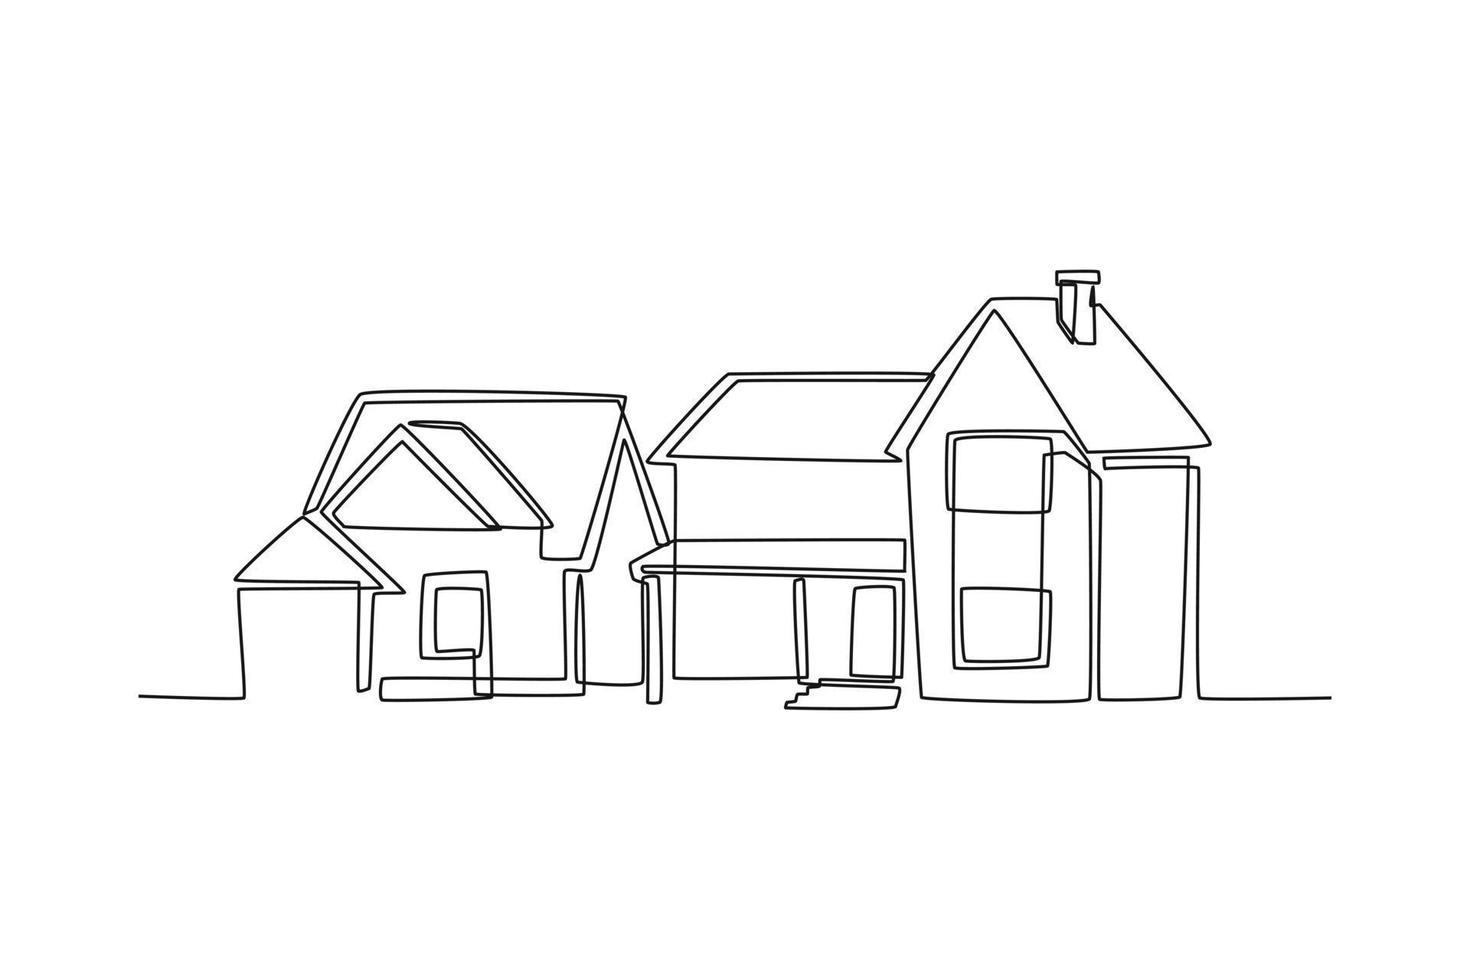 enda ett linje teckning bostads- byggnader på förorts. Hem arkitektur fast egendom begrepp. kontinuerlig linje dra design grafisk vektor illustration.